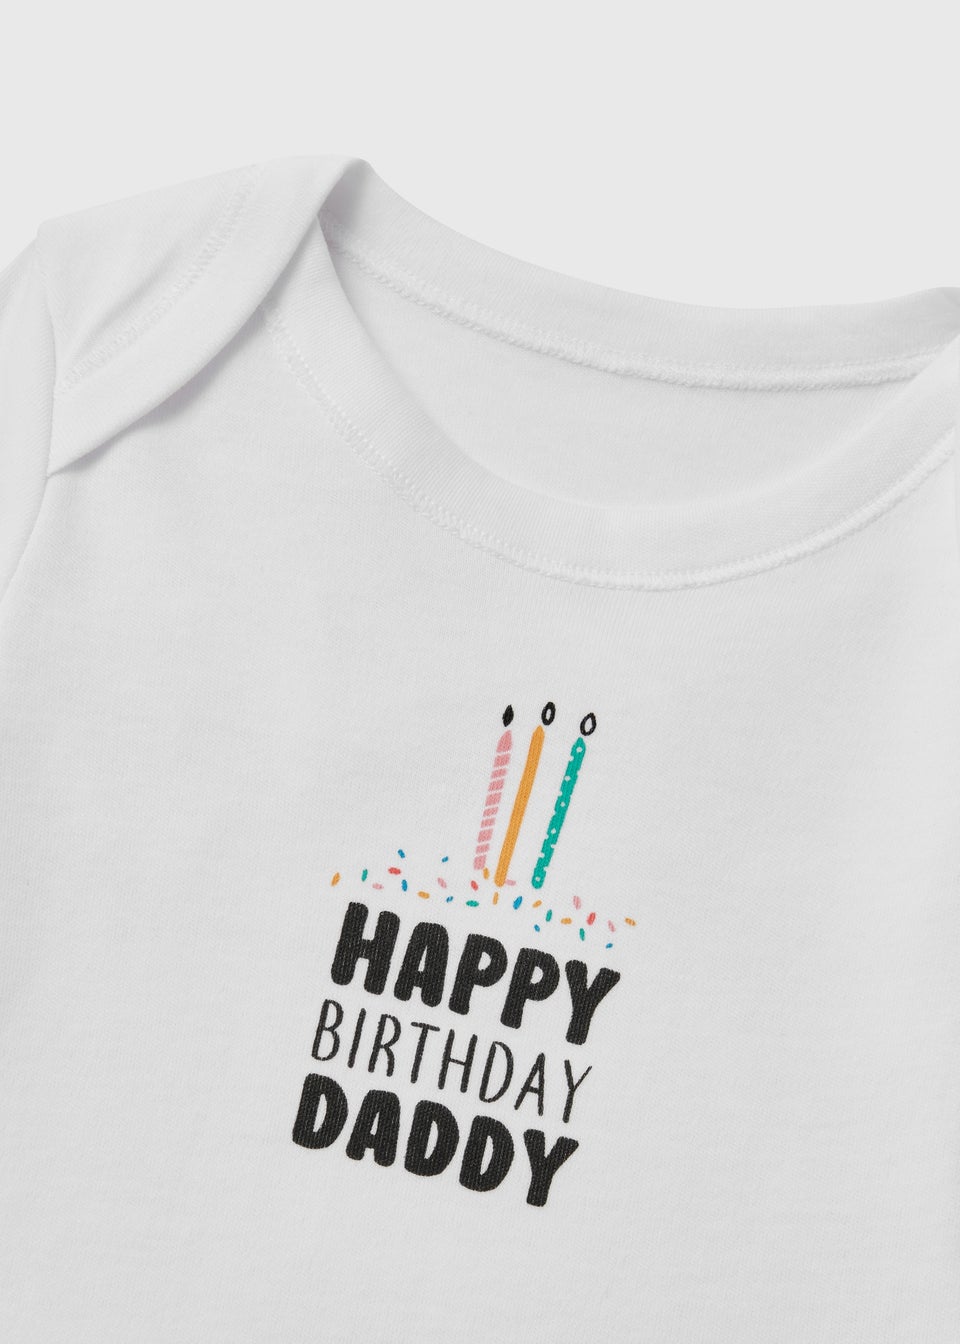 Baby White Happy Birthday Daddy Bodysuit (Tiny Baby-12mths)